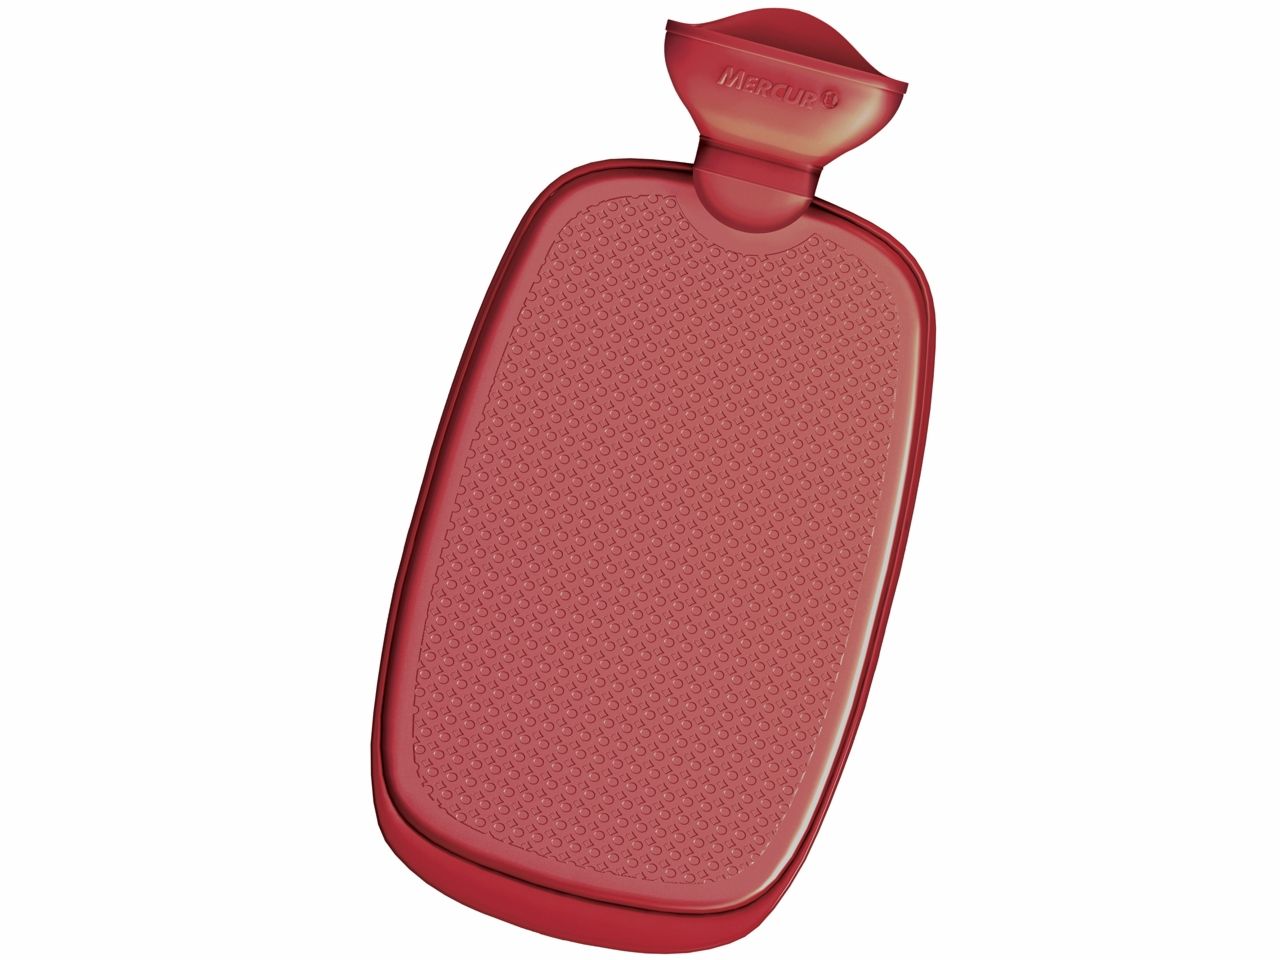 Bolsa de agua quente ajuda na dor nas costas Bolsa Para Agua Quente Media Mercur Isp Saude